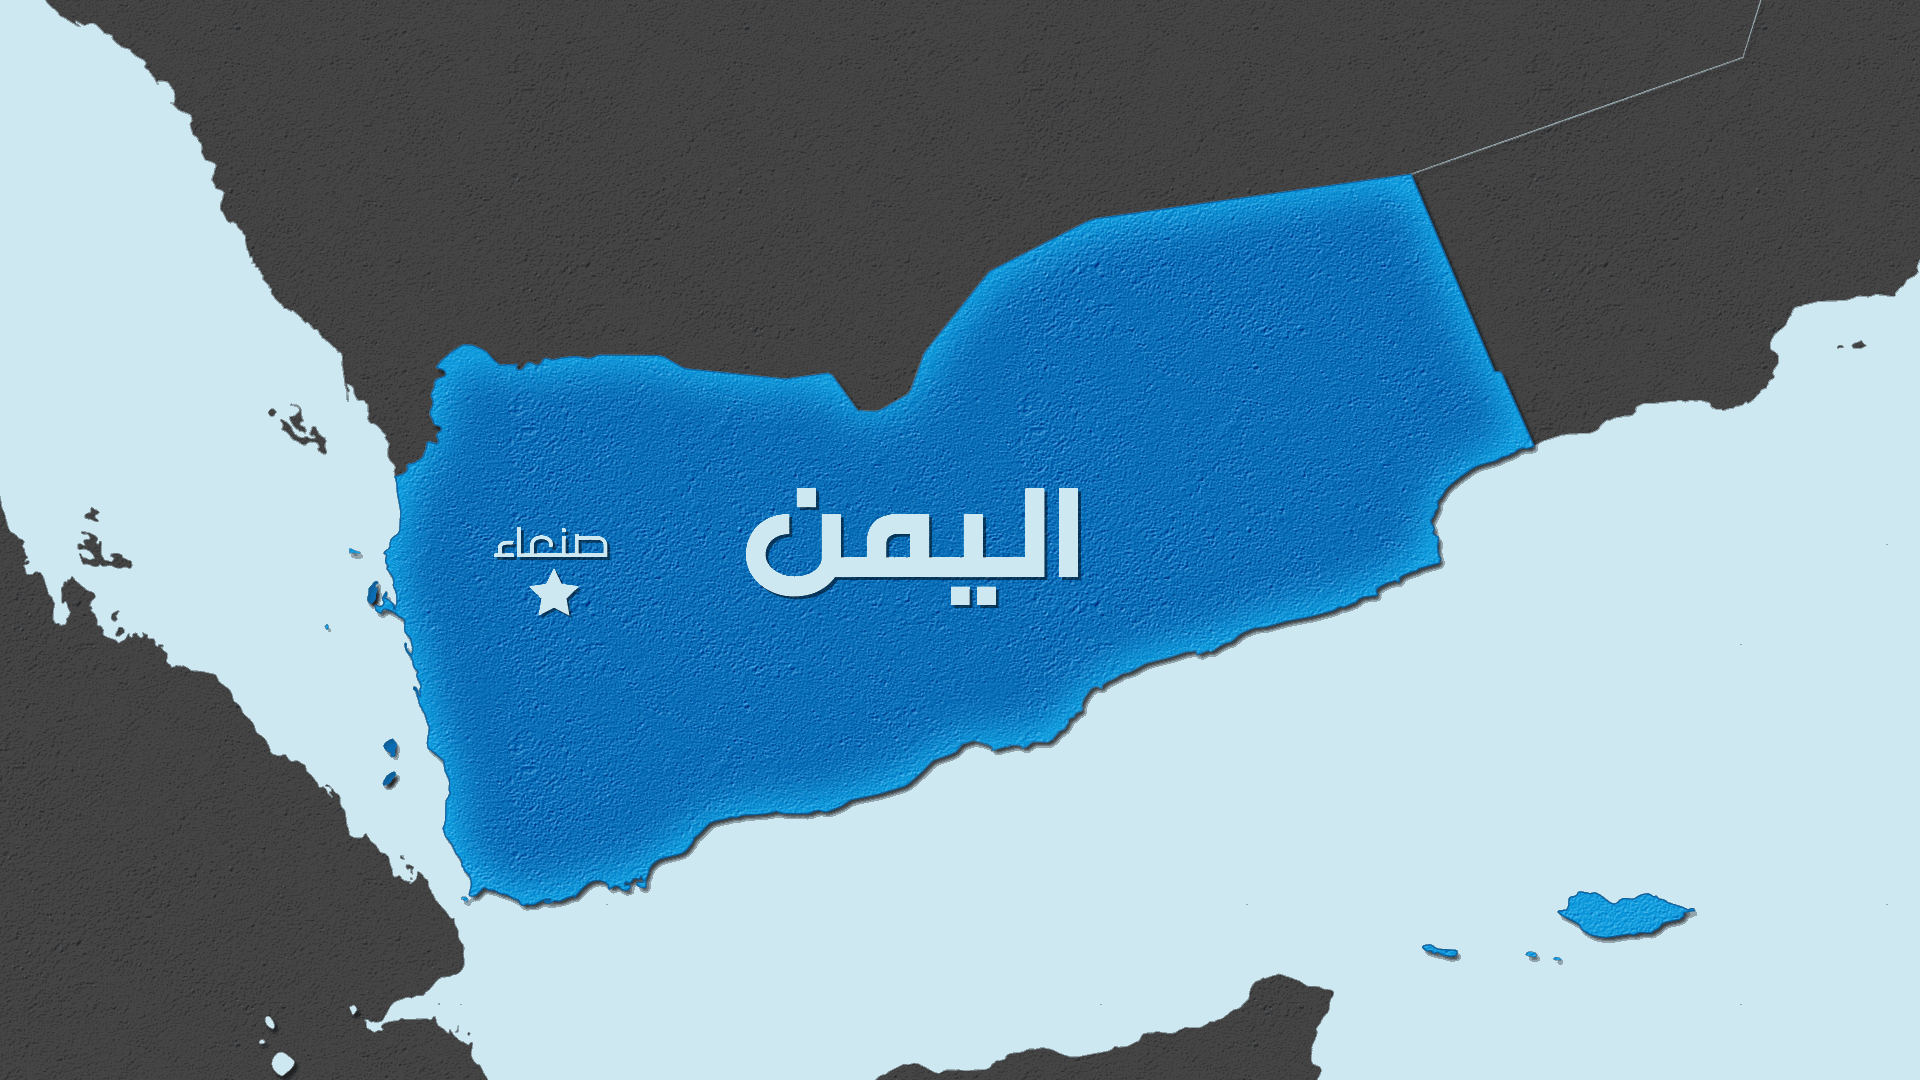 قوات أميركية وبريطانية تشن هجمات على مطار الحديدة وجزيرة كمران باليمن